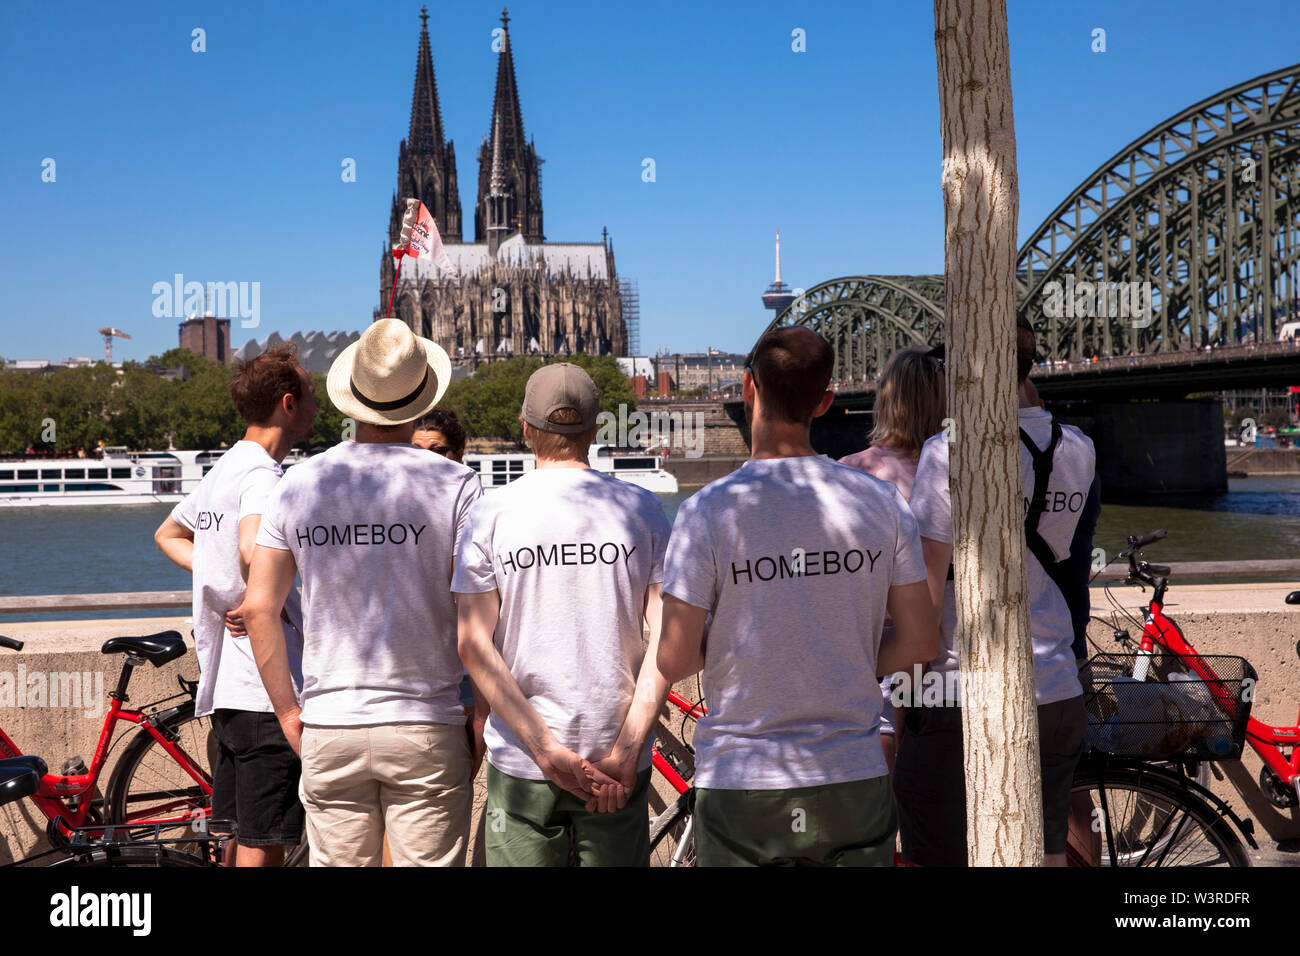 Gli uomini in Homeboy t-shirts guardando verso il Duomo e il ponte di Hohenzollern, Colonia, Germania. Maenner mit Homeboy T-Shirts schauen zum Dom und Foto Stock